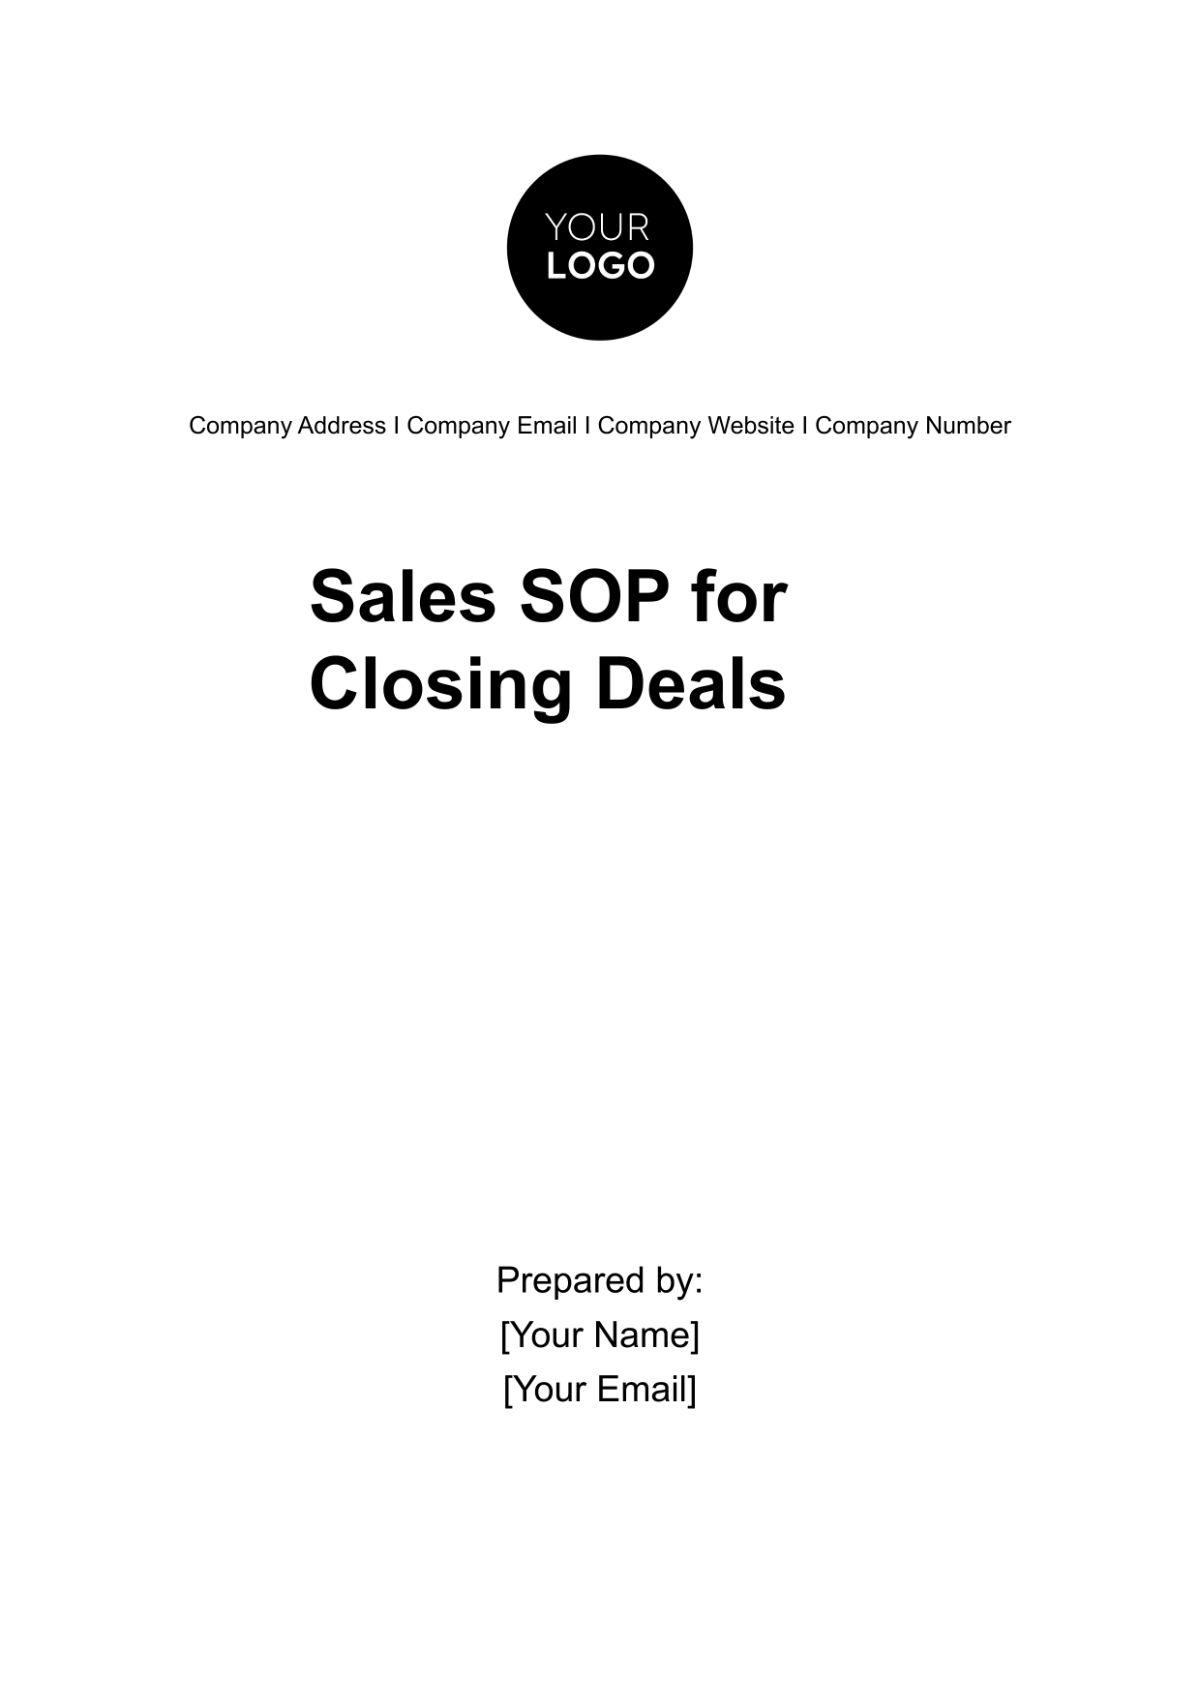 Sales SOP for Closing Deals Template